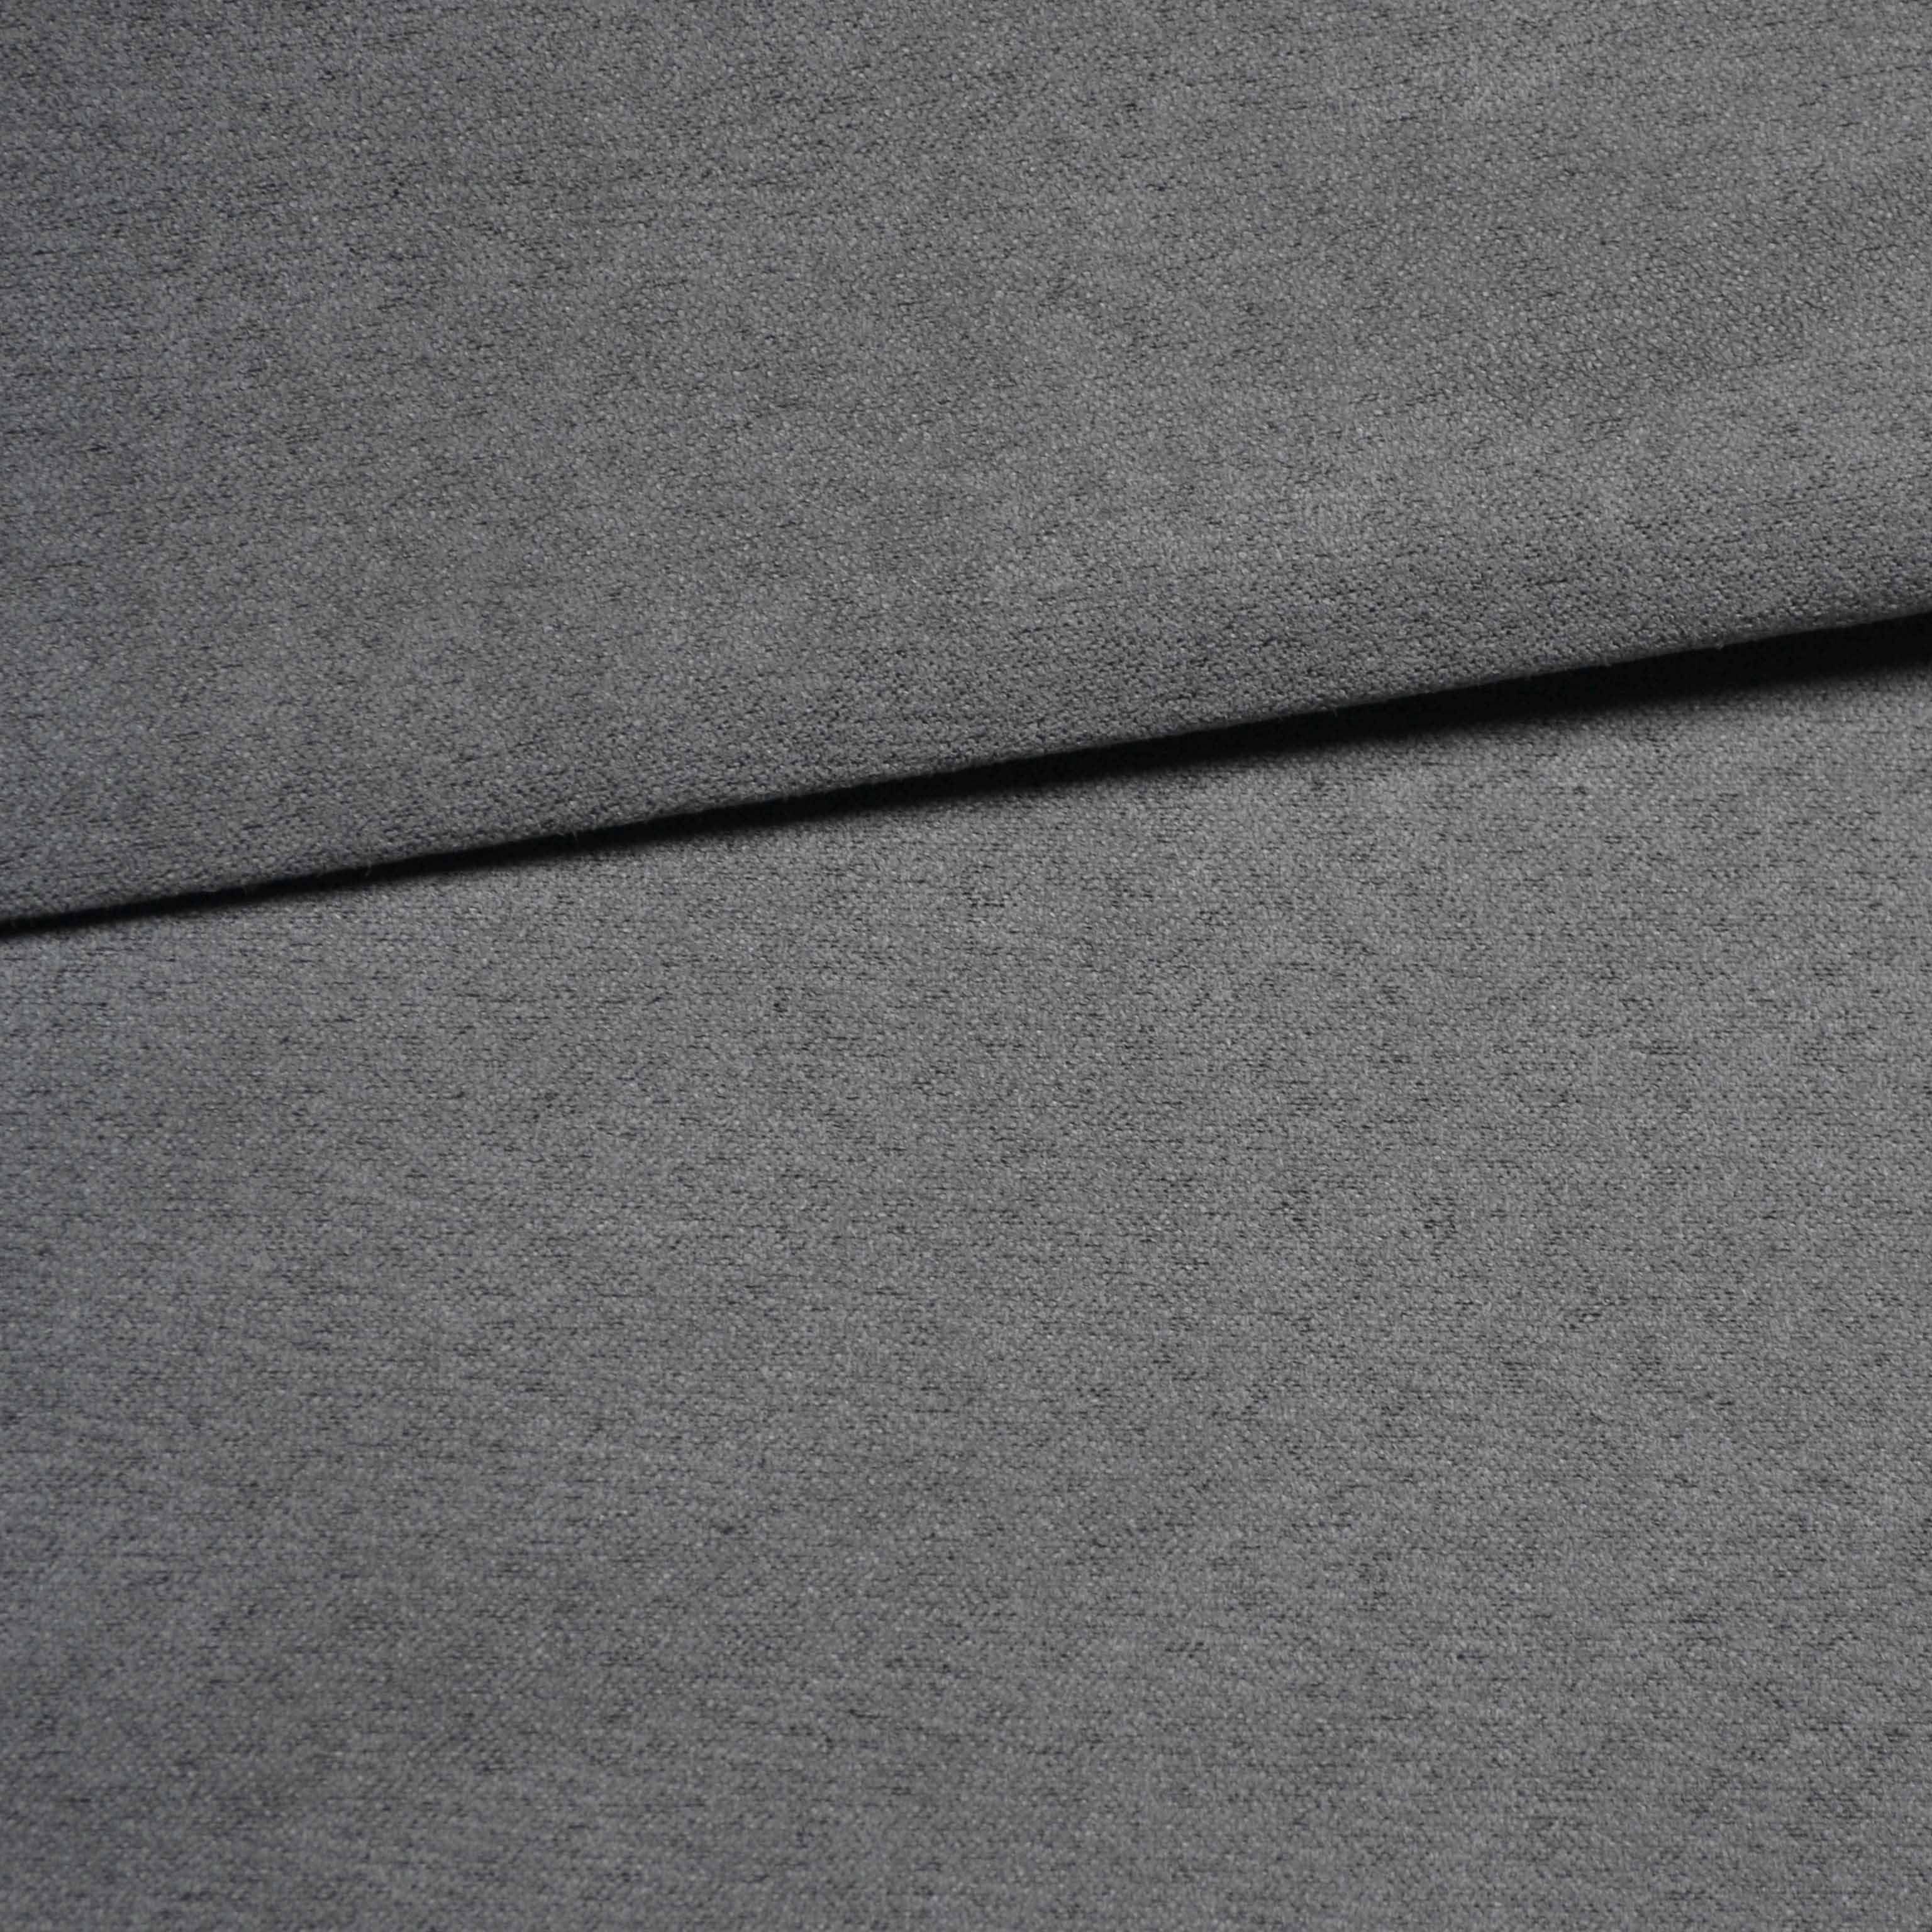 Tapetniško blago - imitacija brušenega usnja temno siva